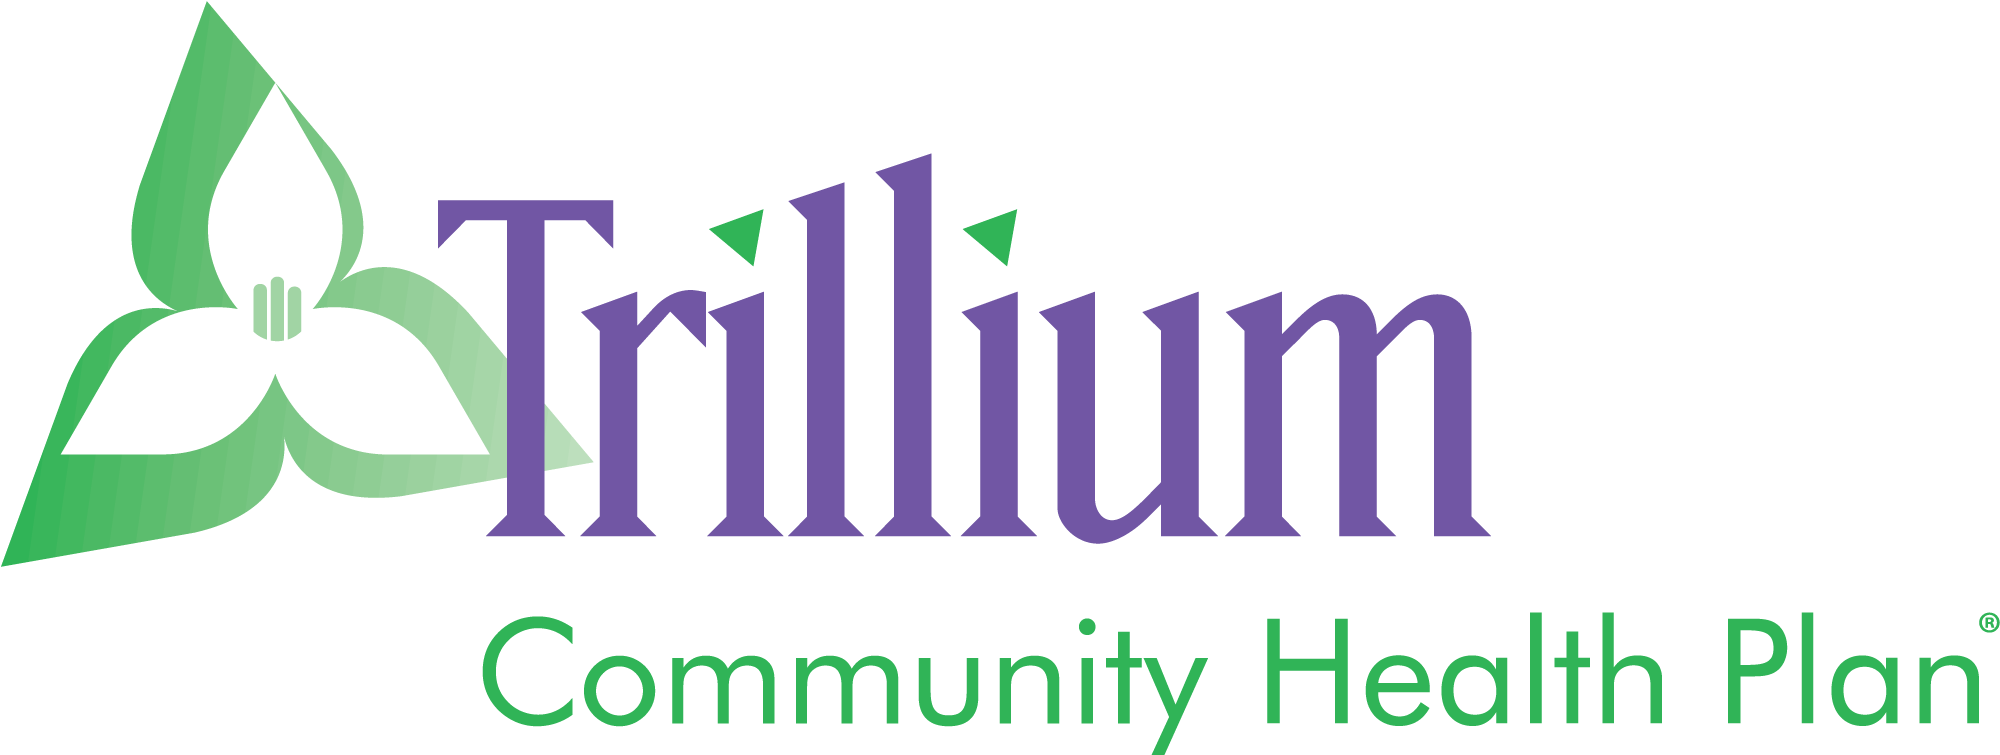 Trillium Community Health Plan (1999x771)